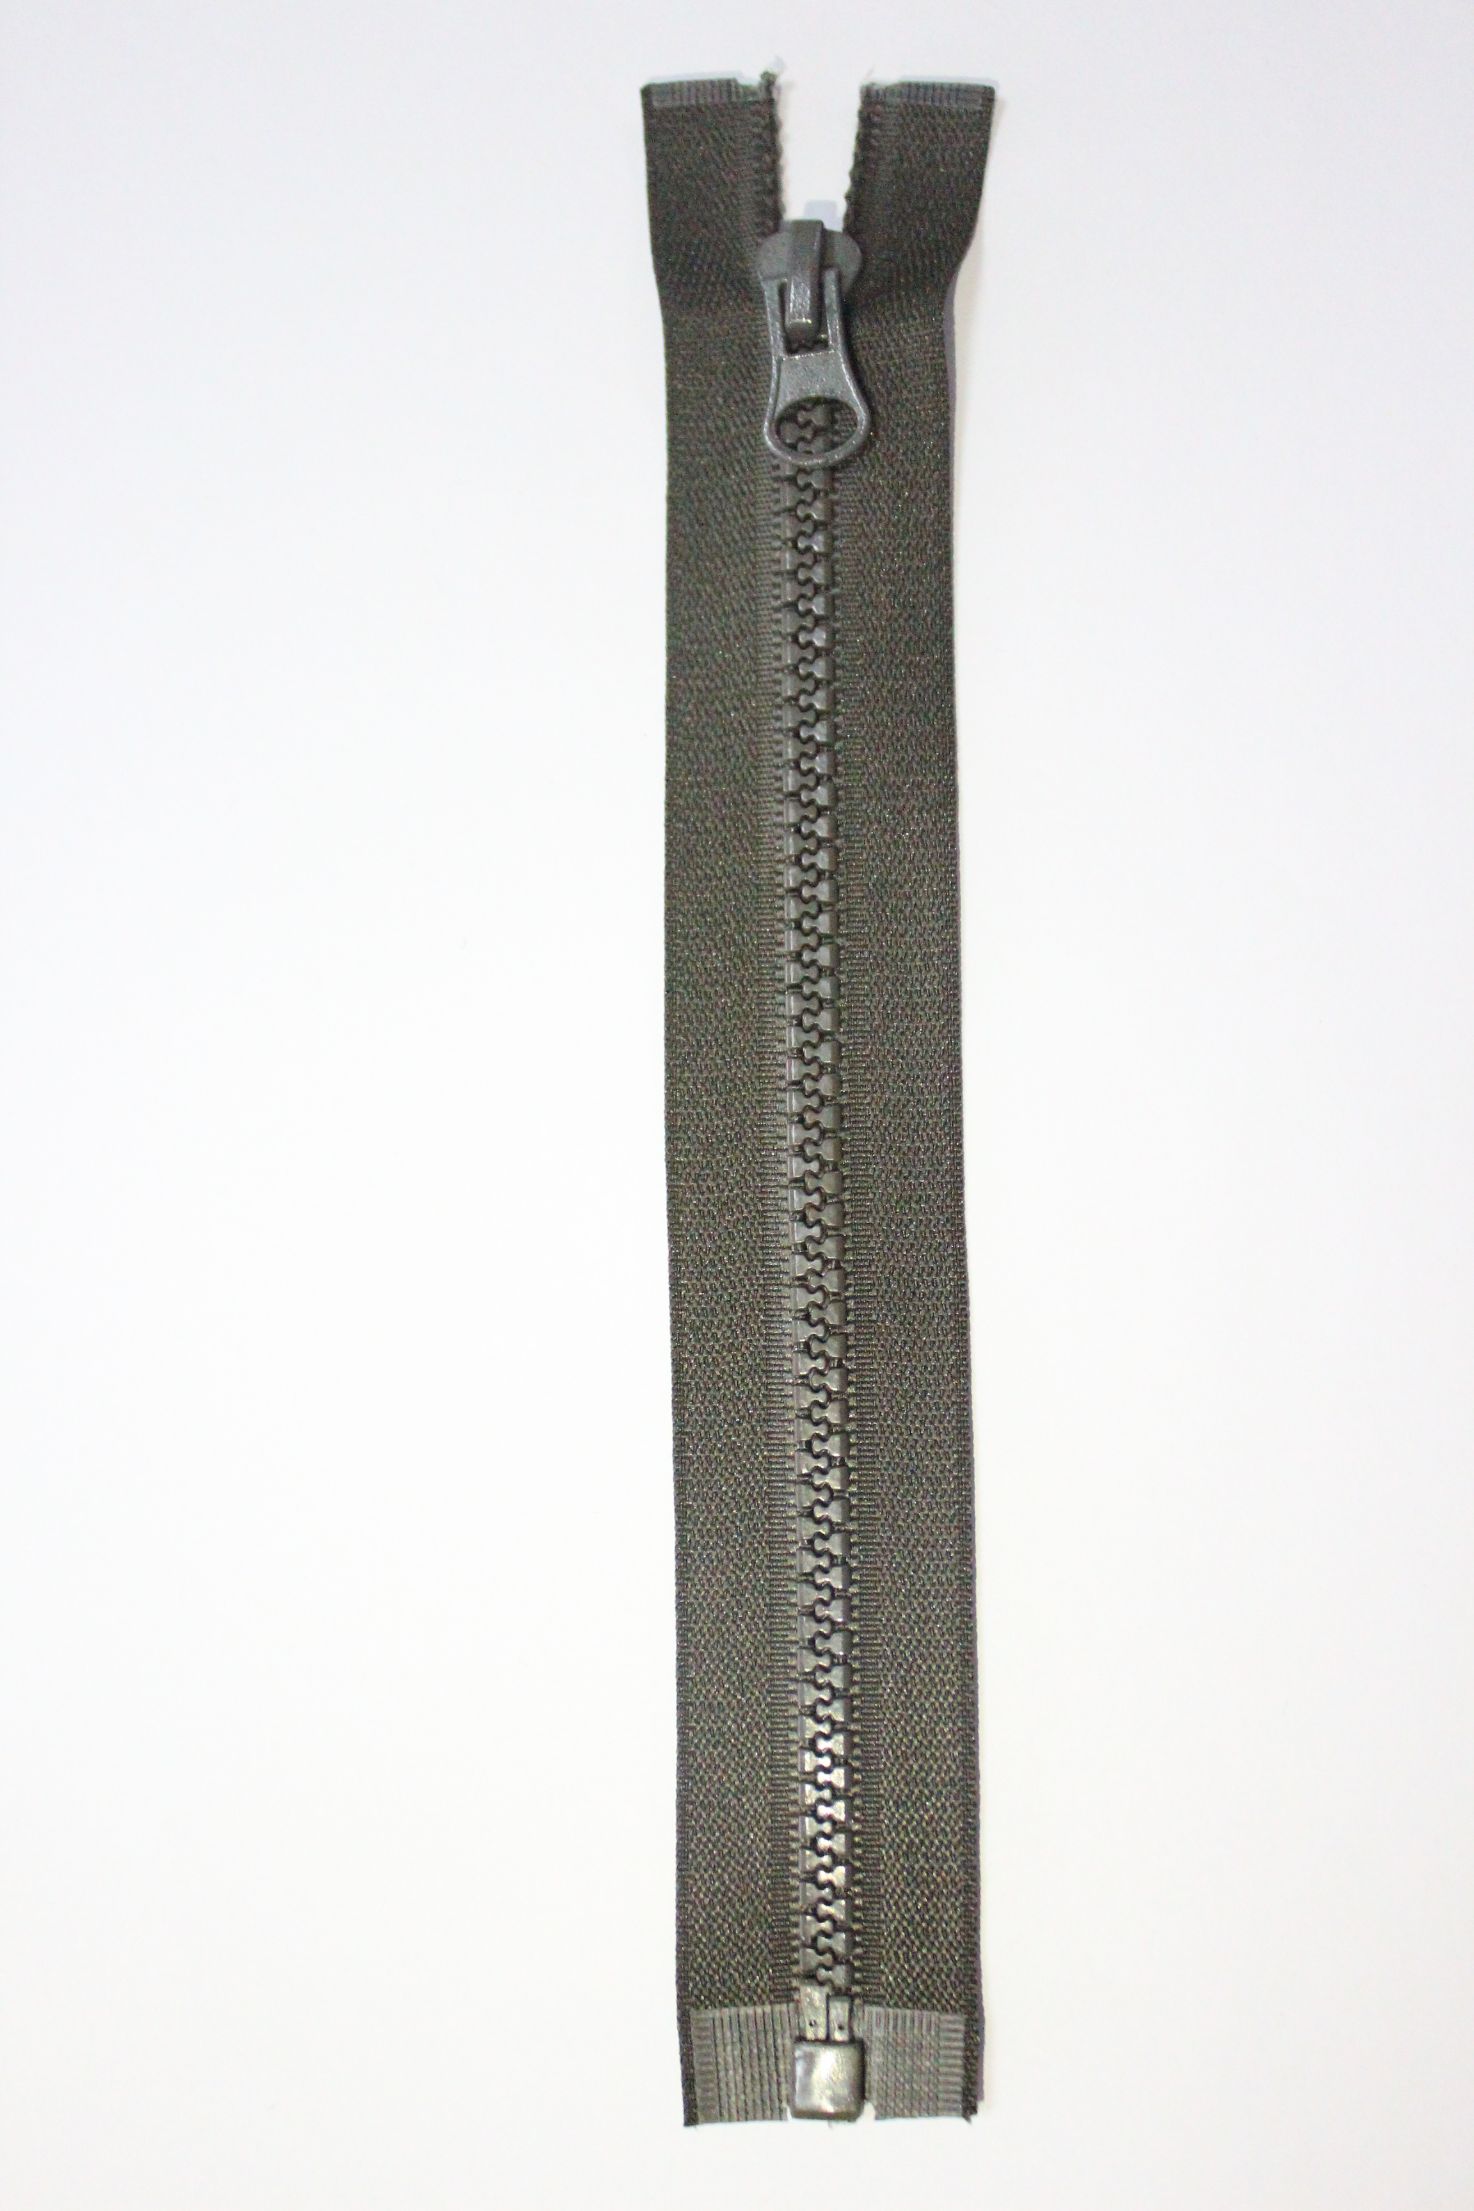 Factory Direct Sales 5# Resin Open Zipper Open End Zipper Plastic Steel Zipper Yiwu Zipper Factory Zipper